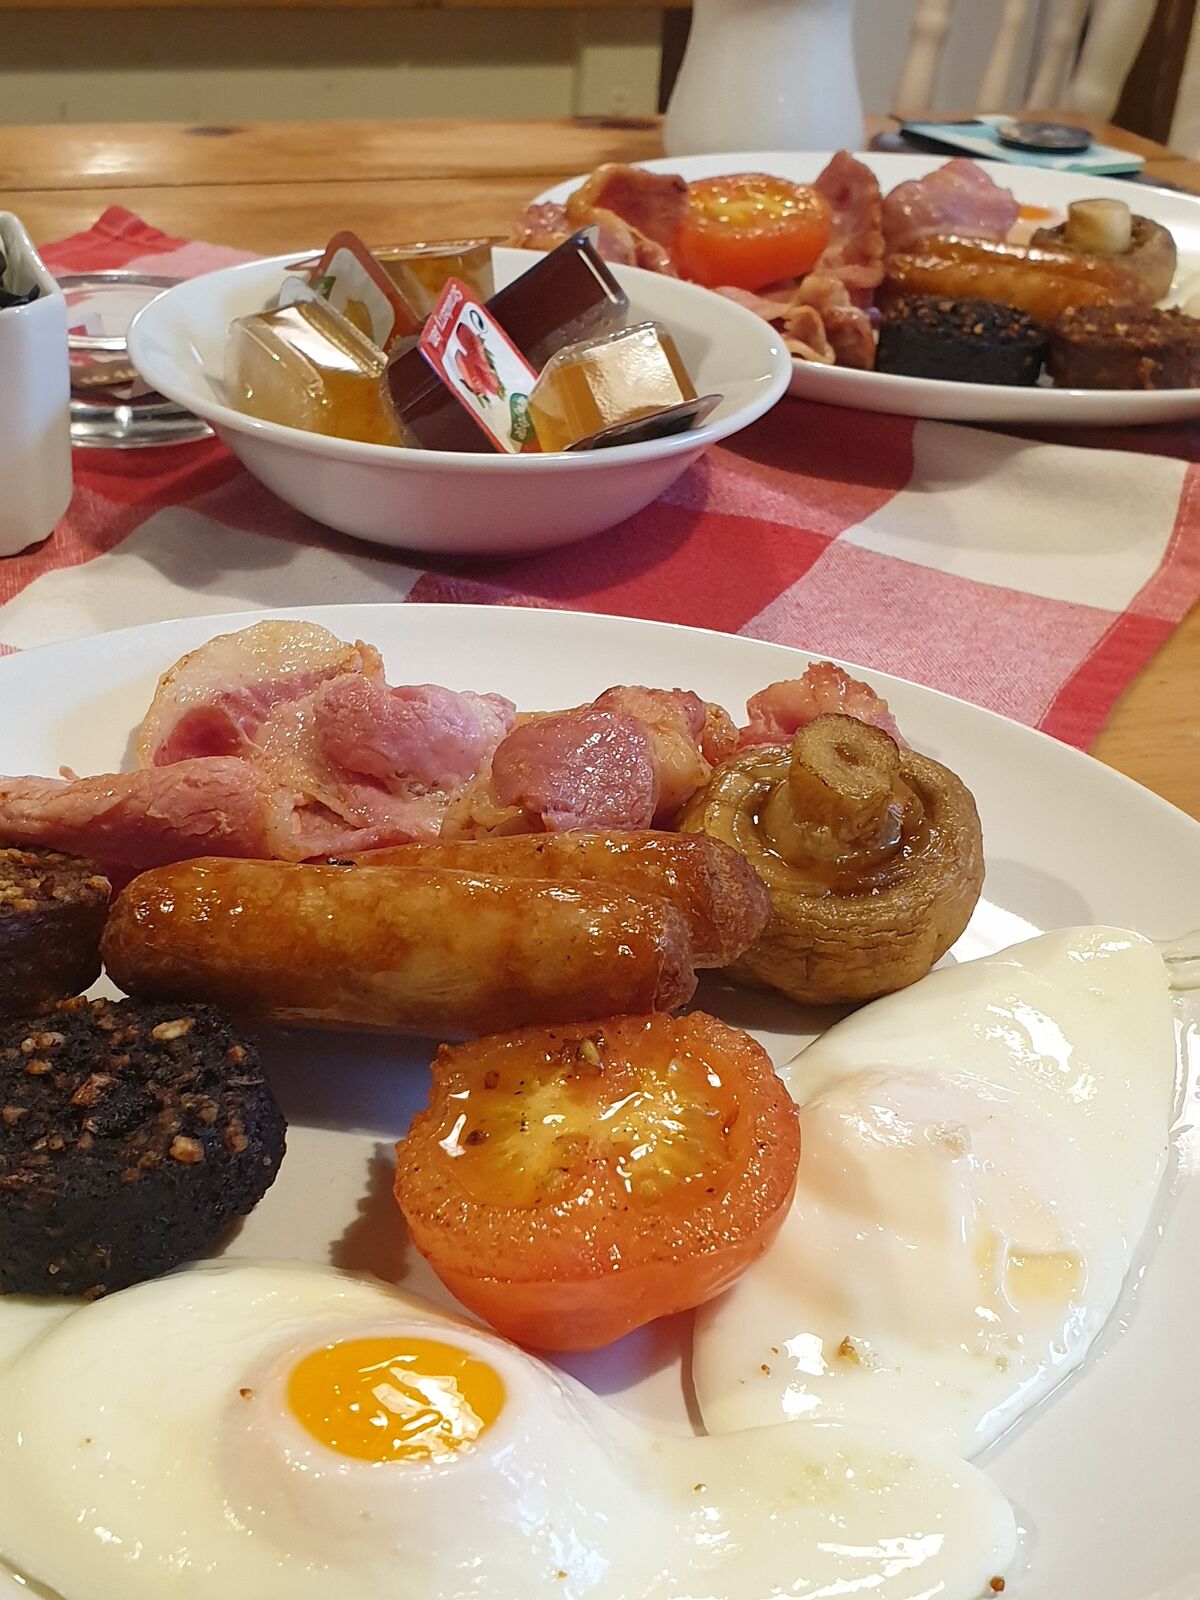 Full Irish Breakfast, also ein komplettes irisches Frühstück.